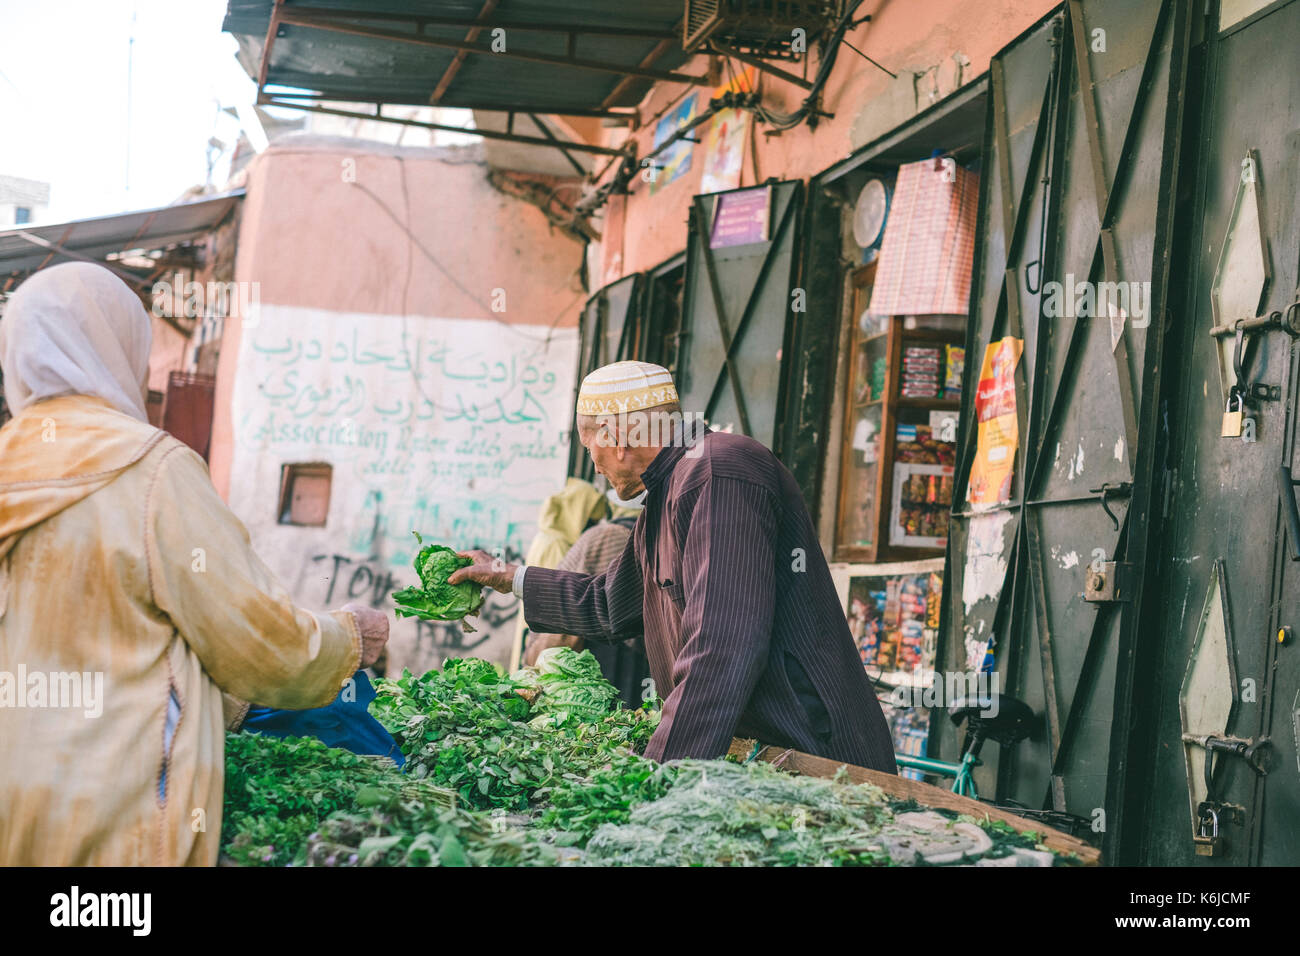 Street market scene in Medina, Marrakesh, Morocco Stock Photo